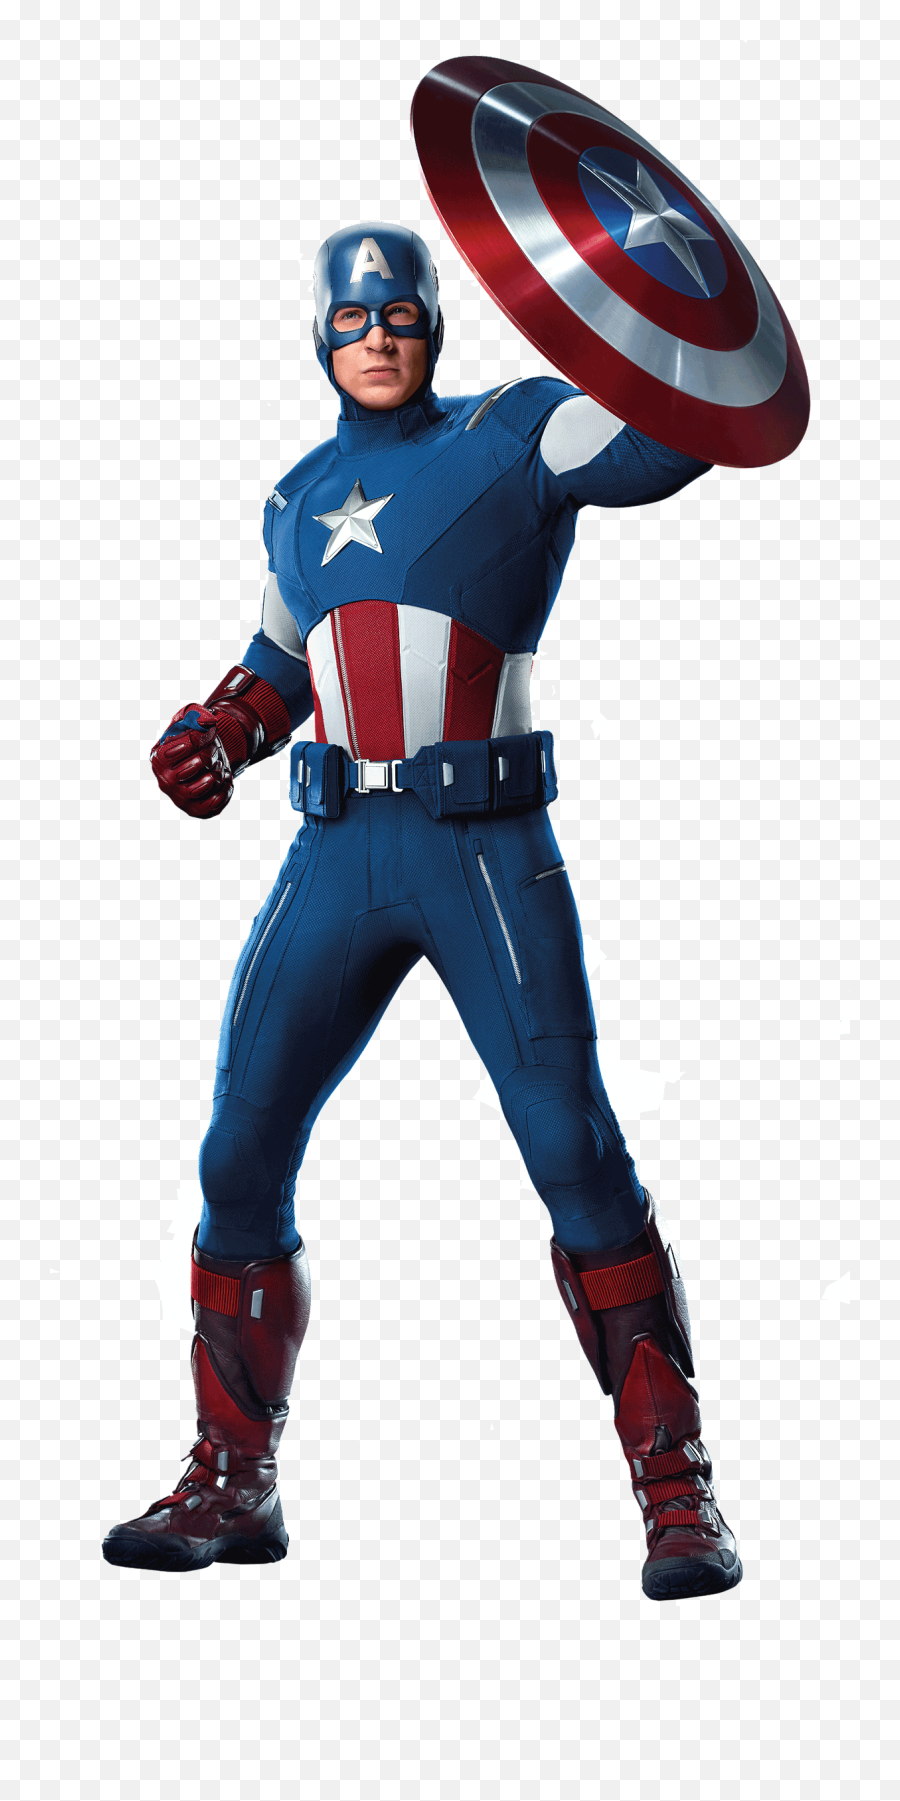 Captain America Transparent Images - Captain America The Avengers 2012 Png,Captain America Transparent Background